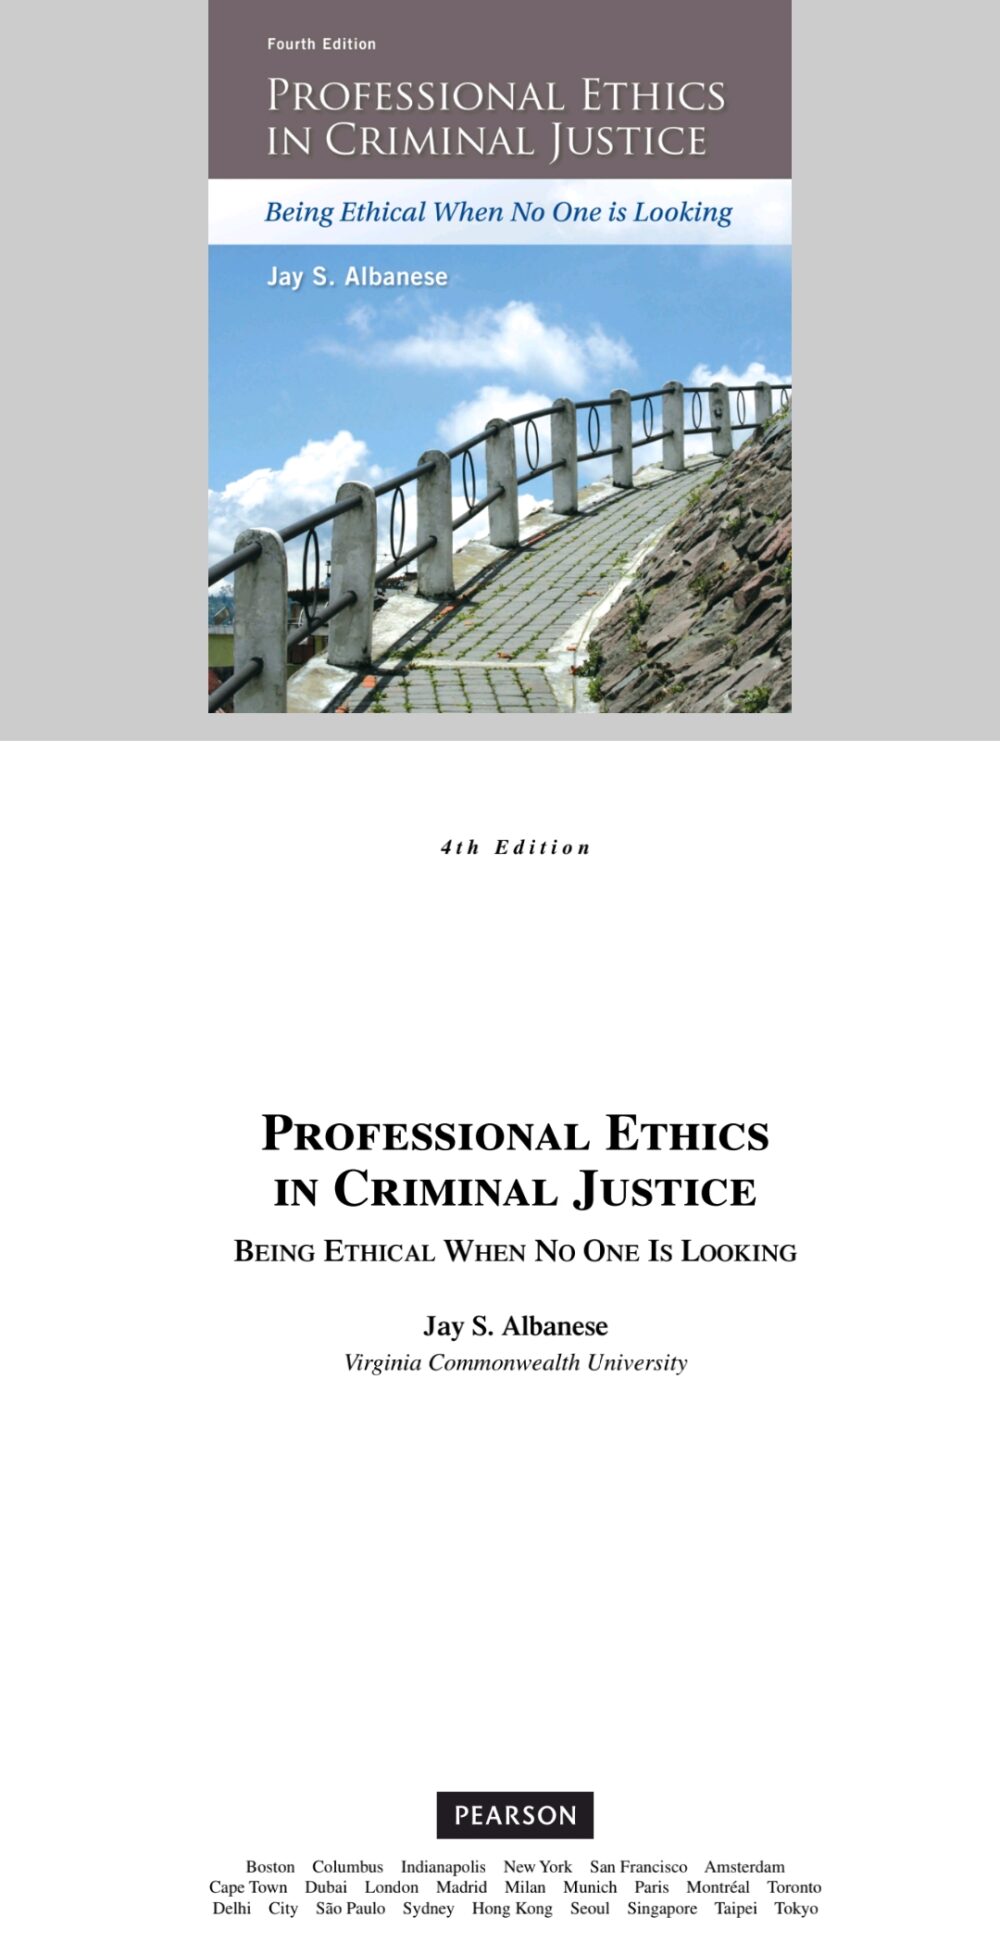 Etica professionale nella giustizia penale: essere etici quando nessuno guarda 4a edizione (quarta edizione)